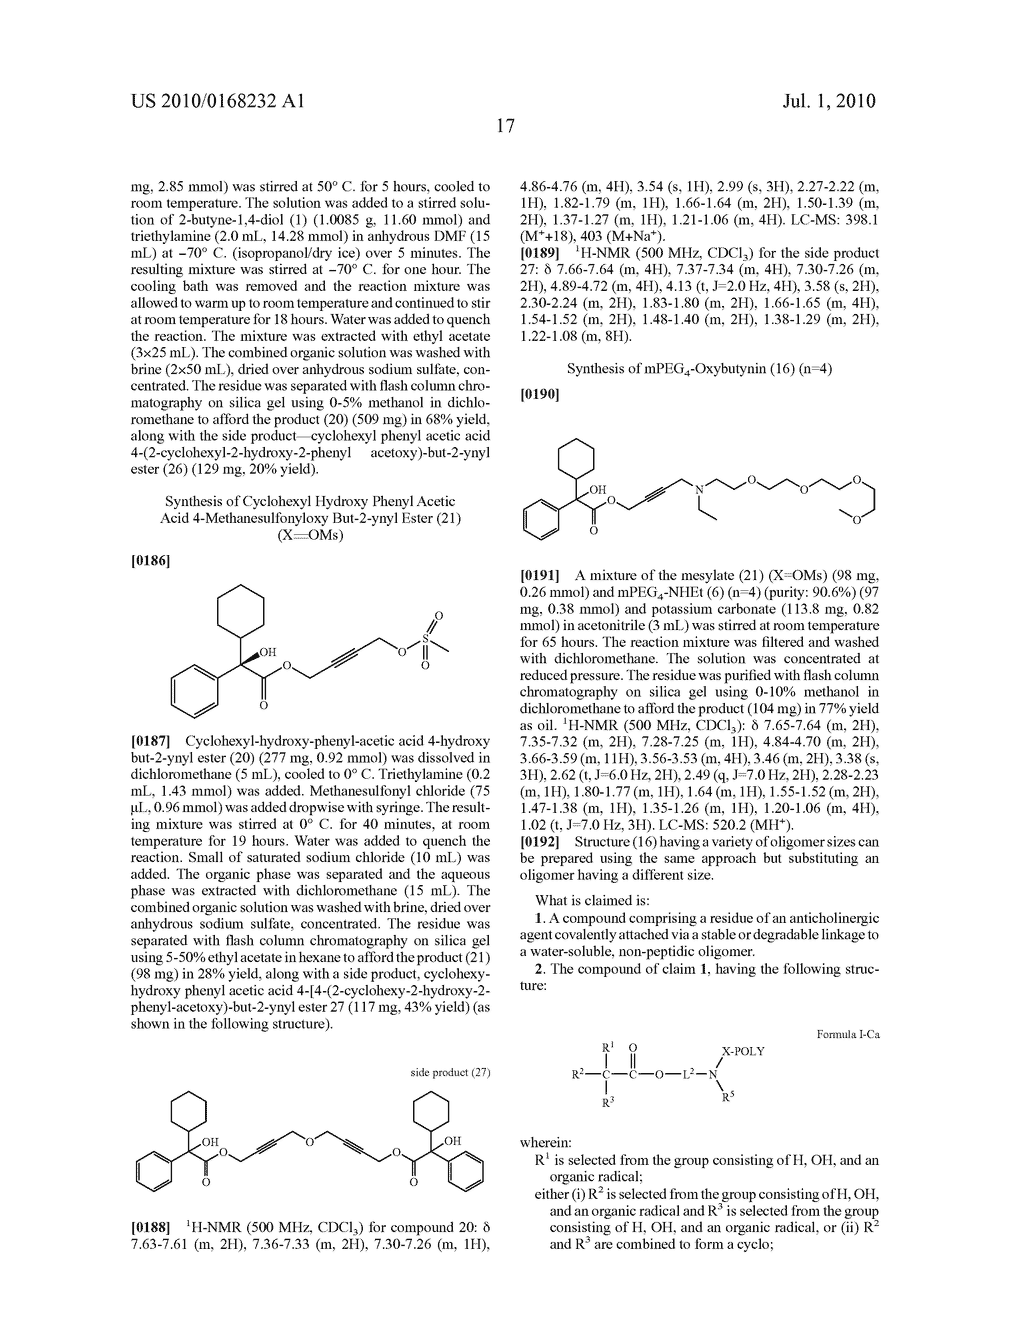 Oligomer-Anticholinergic Agent Conjugates - diagram, schematic, and image 18